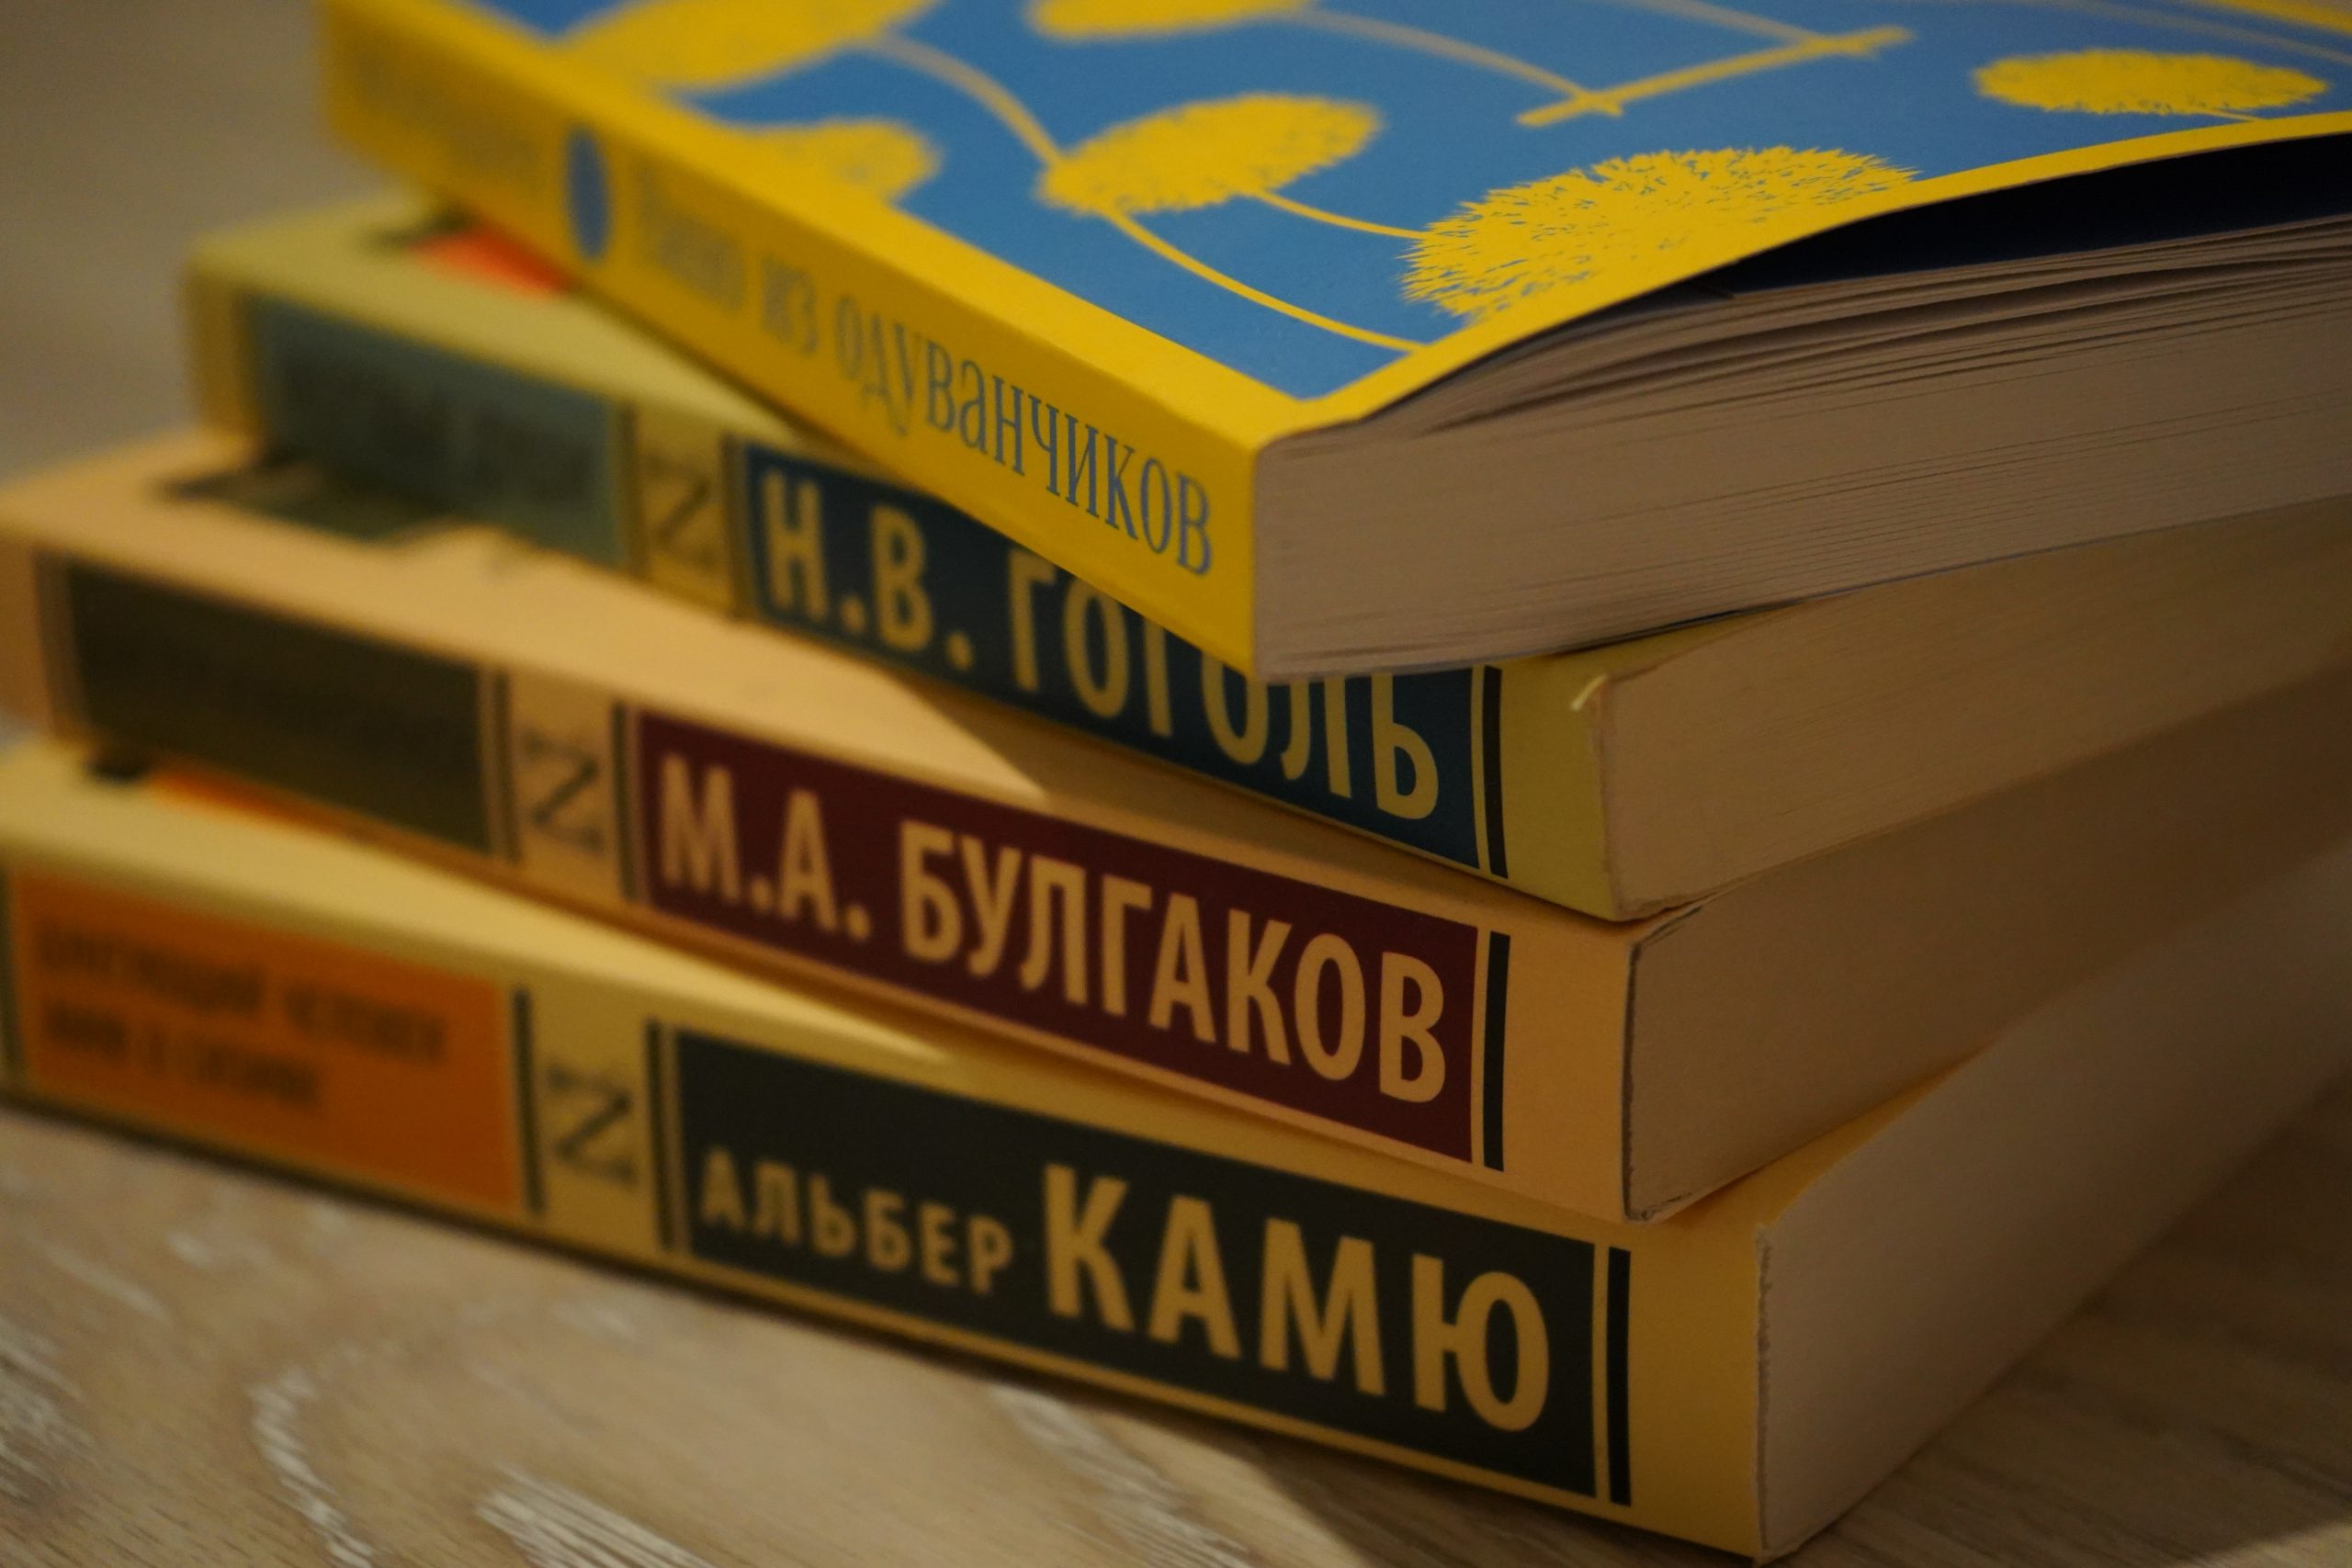 Библиотеки Орехово-Борисово участвуют в книжном фестивале. Фото: Анна Быкова, « Вечерняя Москва»